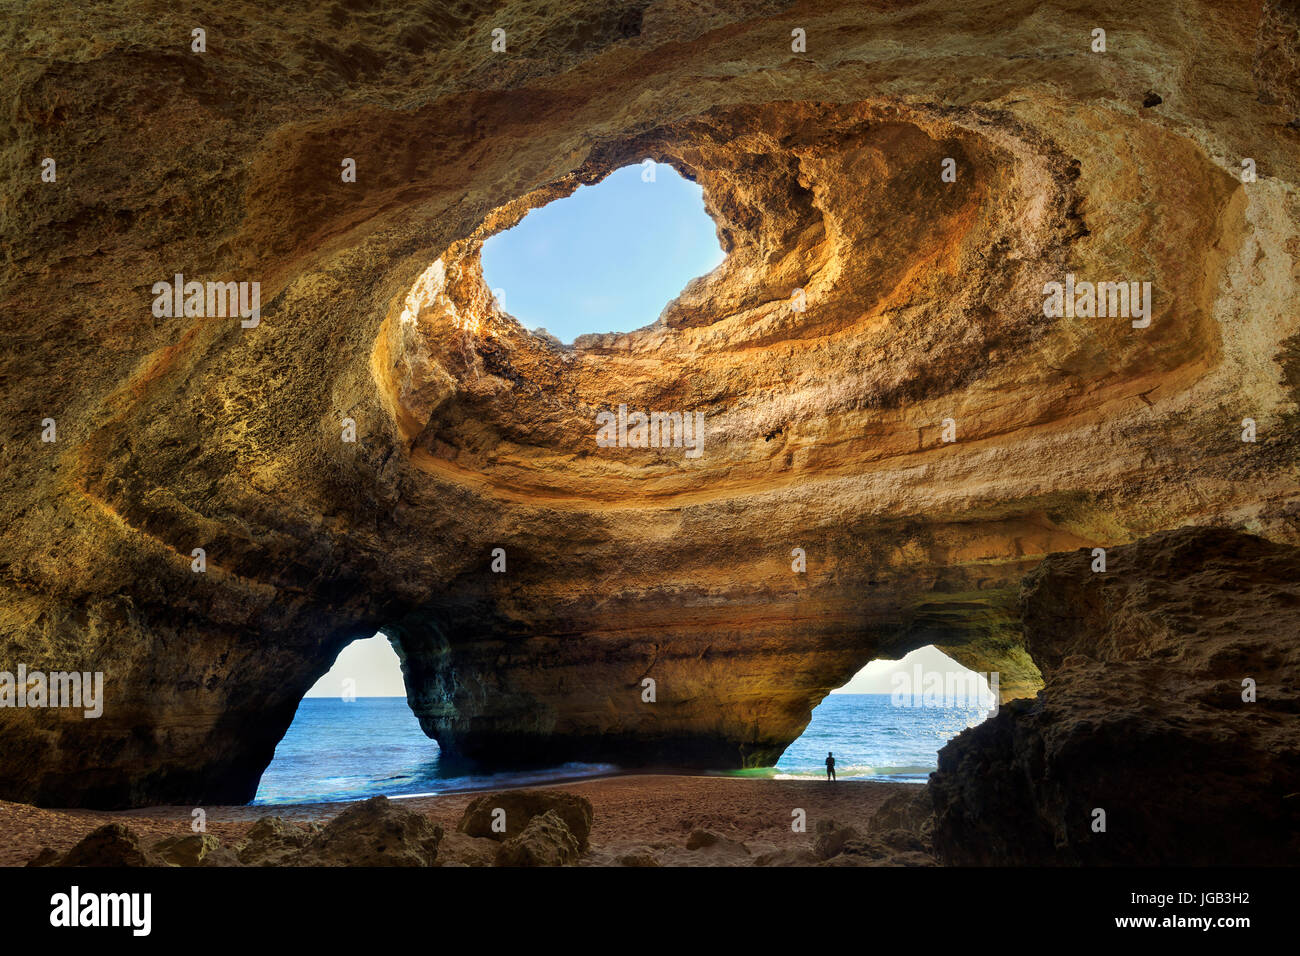 Beautiful natural cave in Benagil, Algarve, Portugal Stock Photo